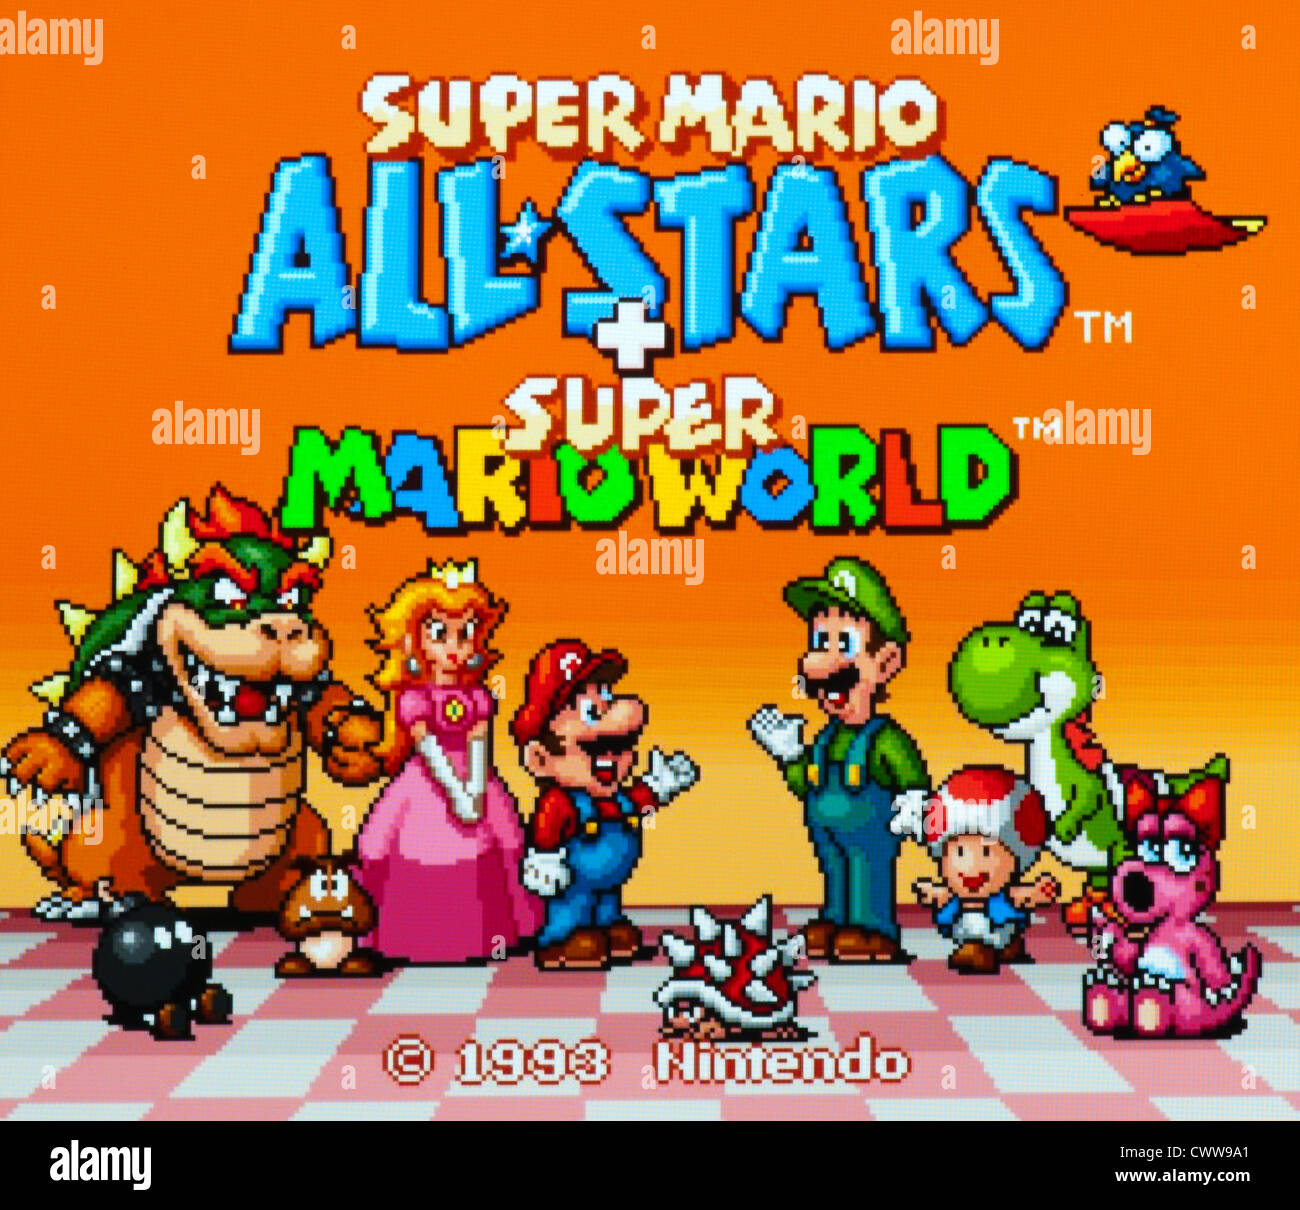 new super mario all stars hd download pc